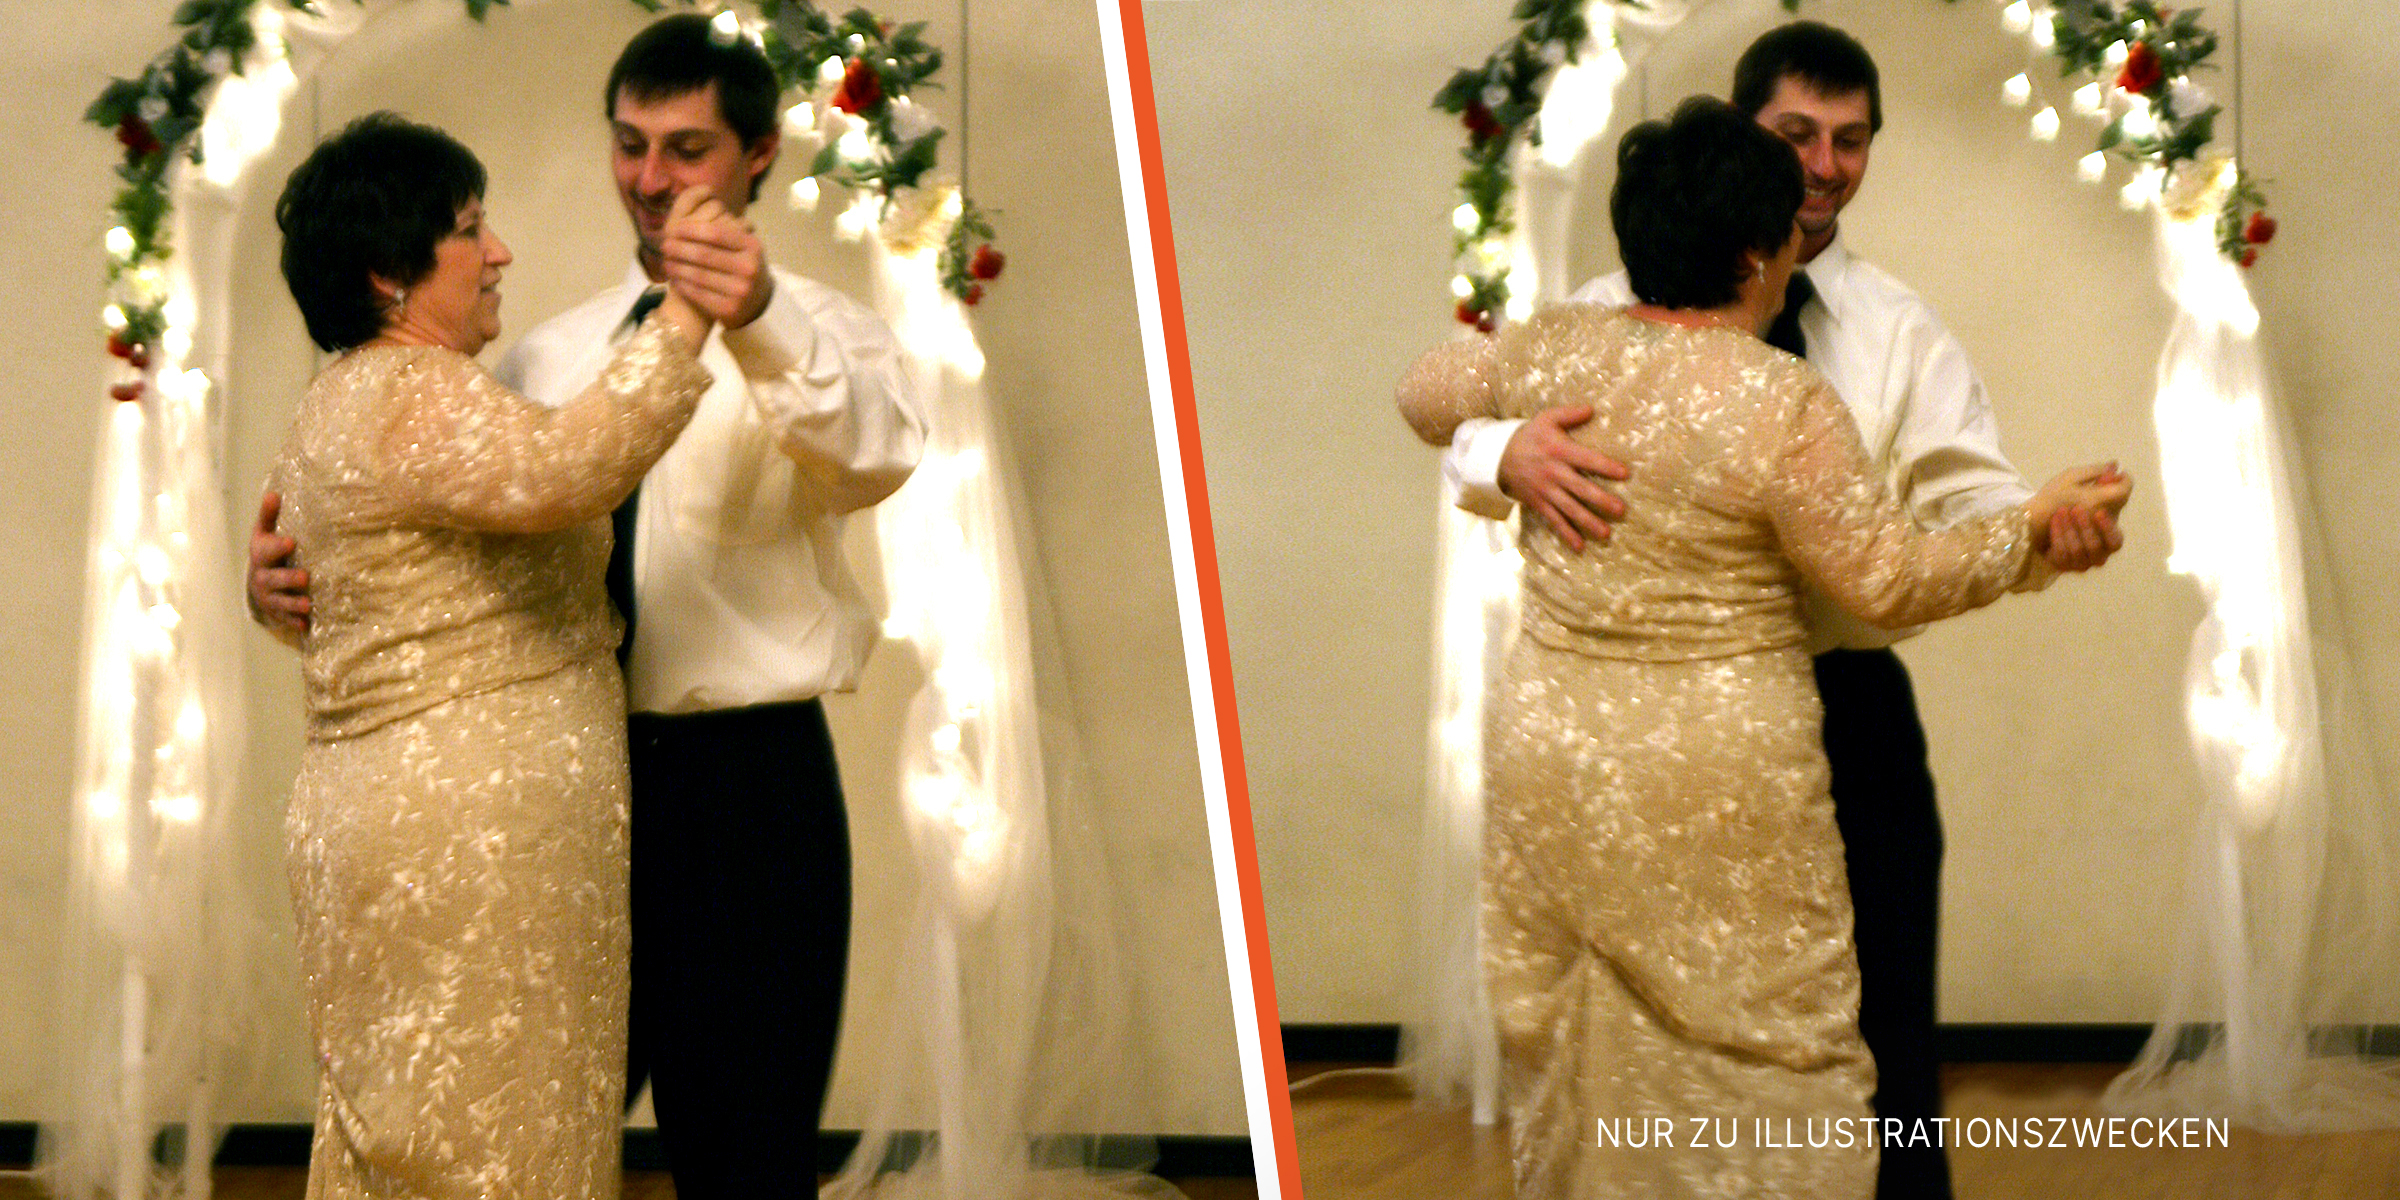 Ein Sohn tanzt mit seiner Mutter auf seiner Hochzeit | Quelle: flickr.com/quinn.anya/CC BY-SA 2.0